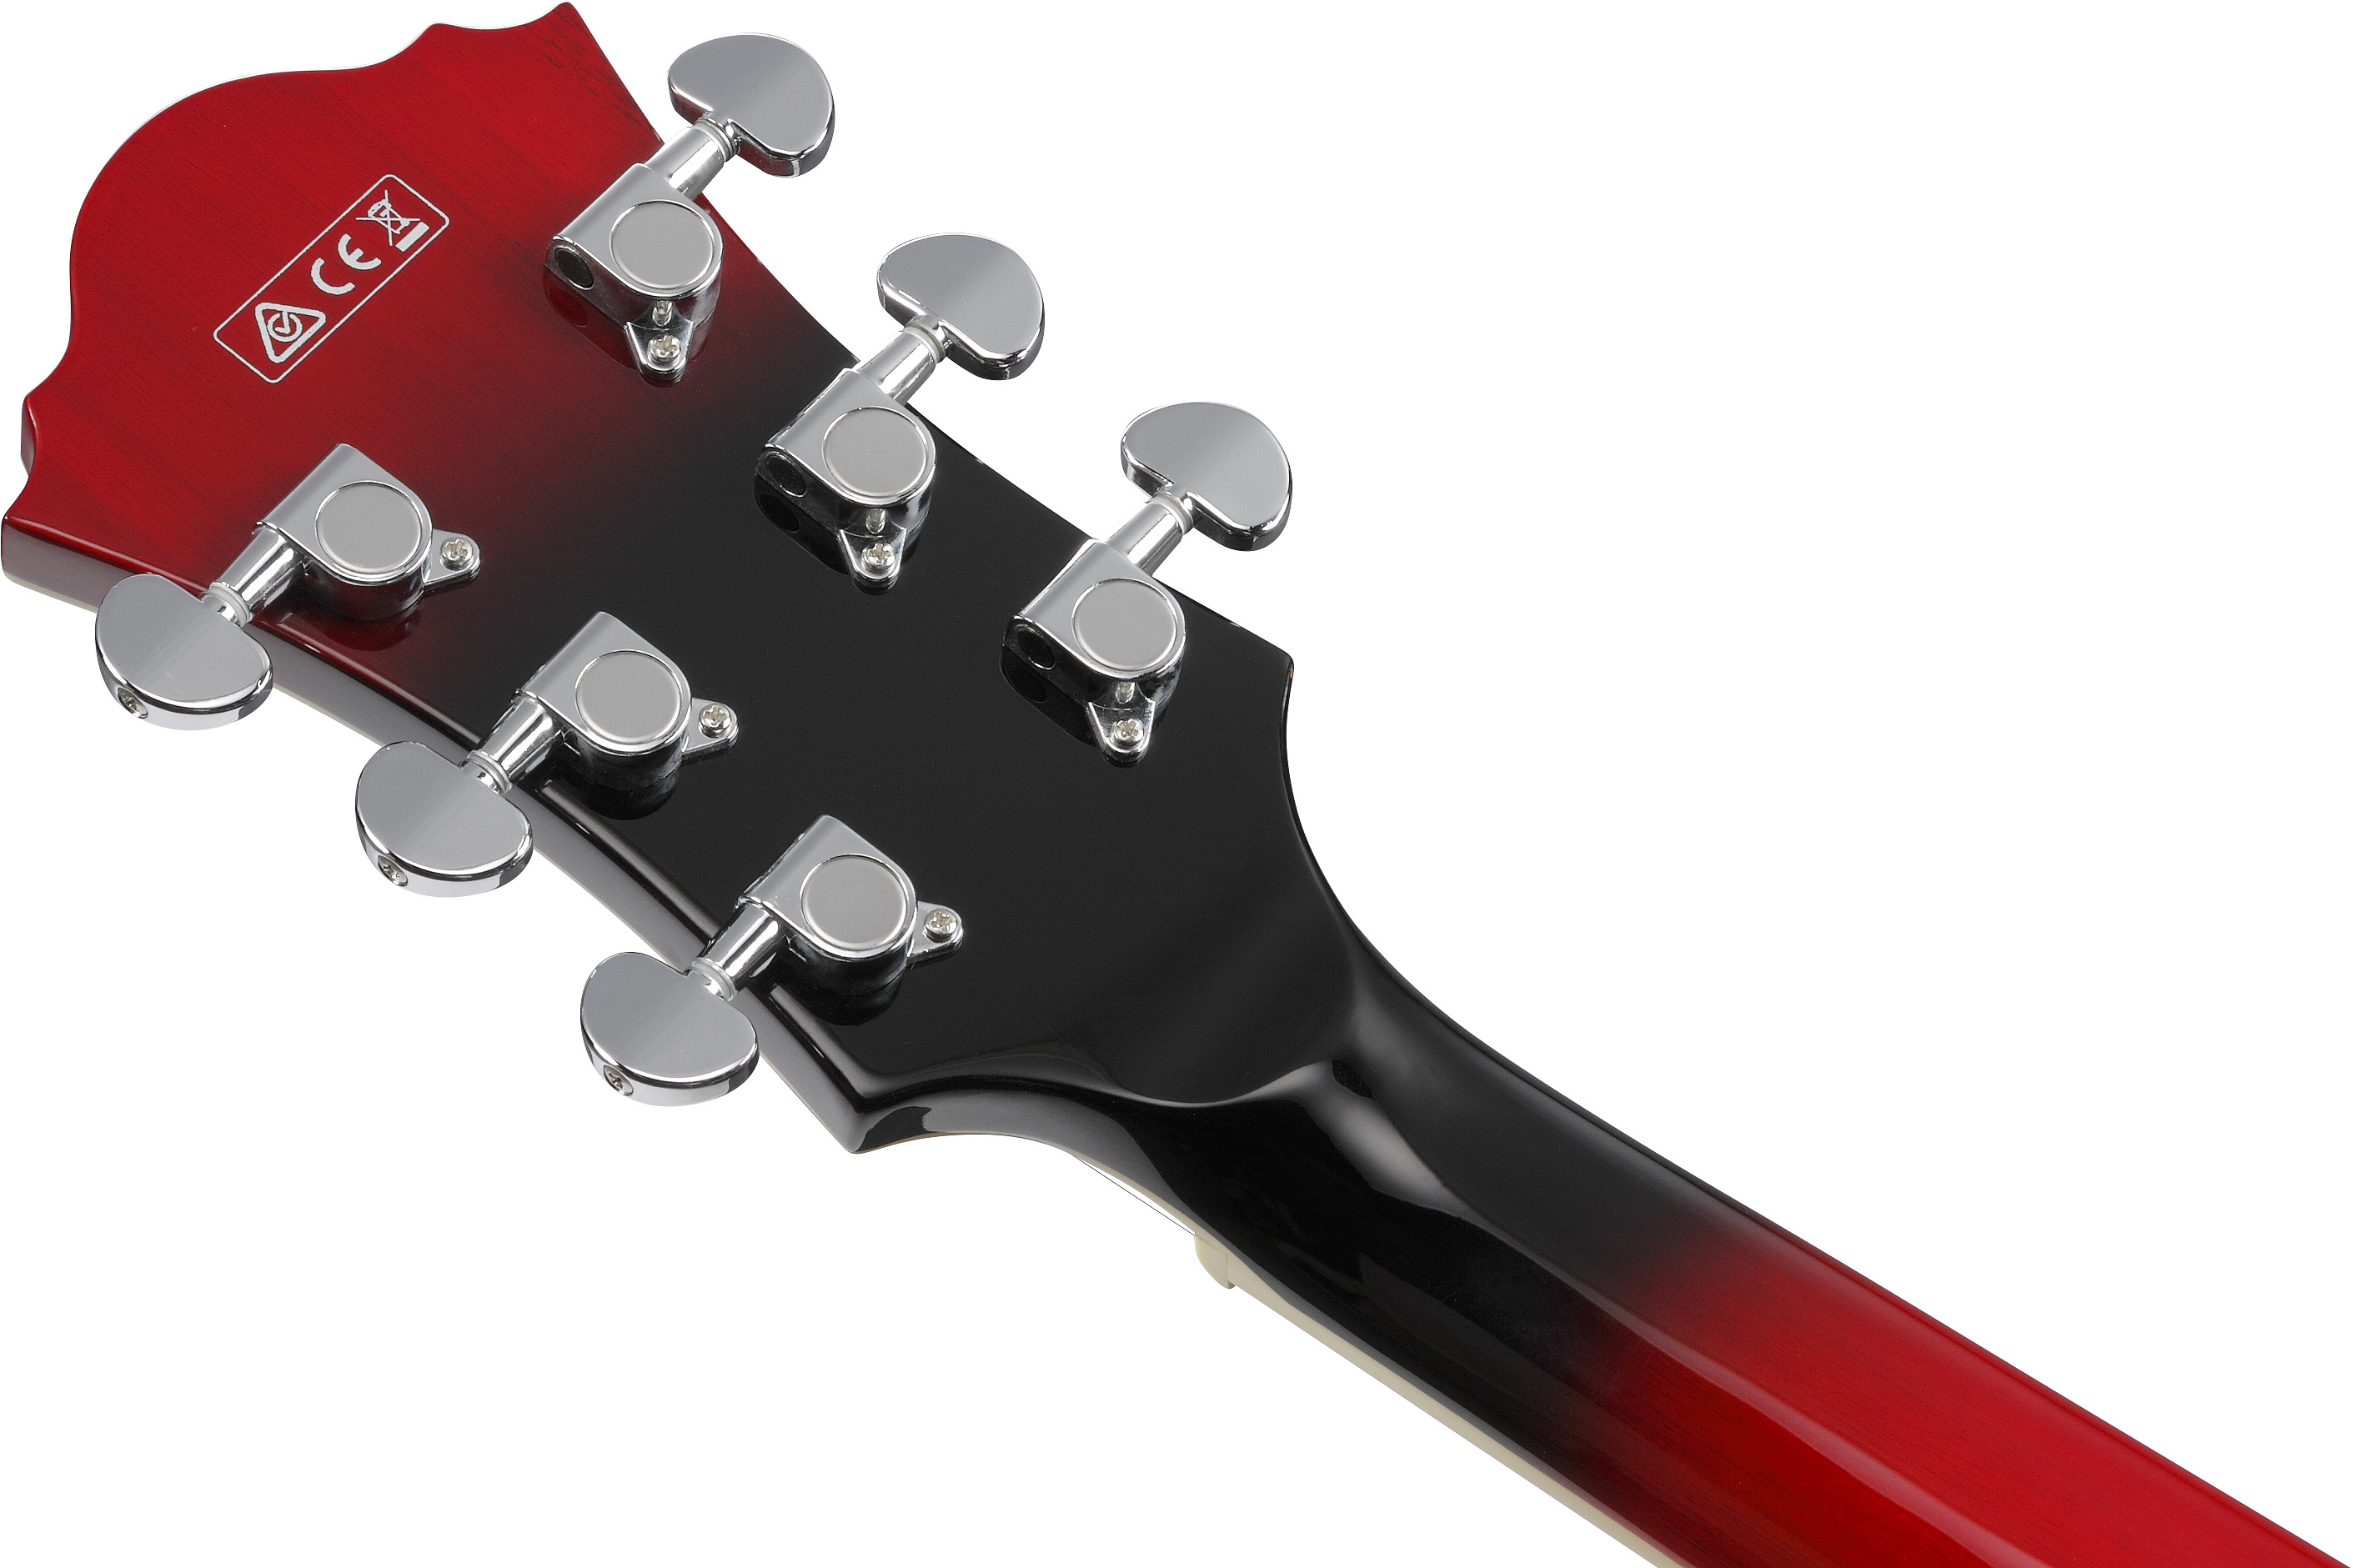 Полуакустическая гитара IBANEZ AF75-TRS – фото 9